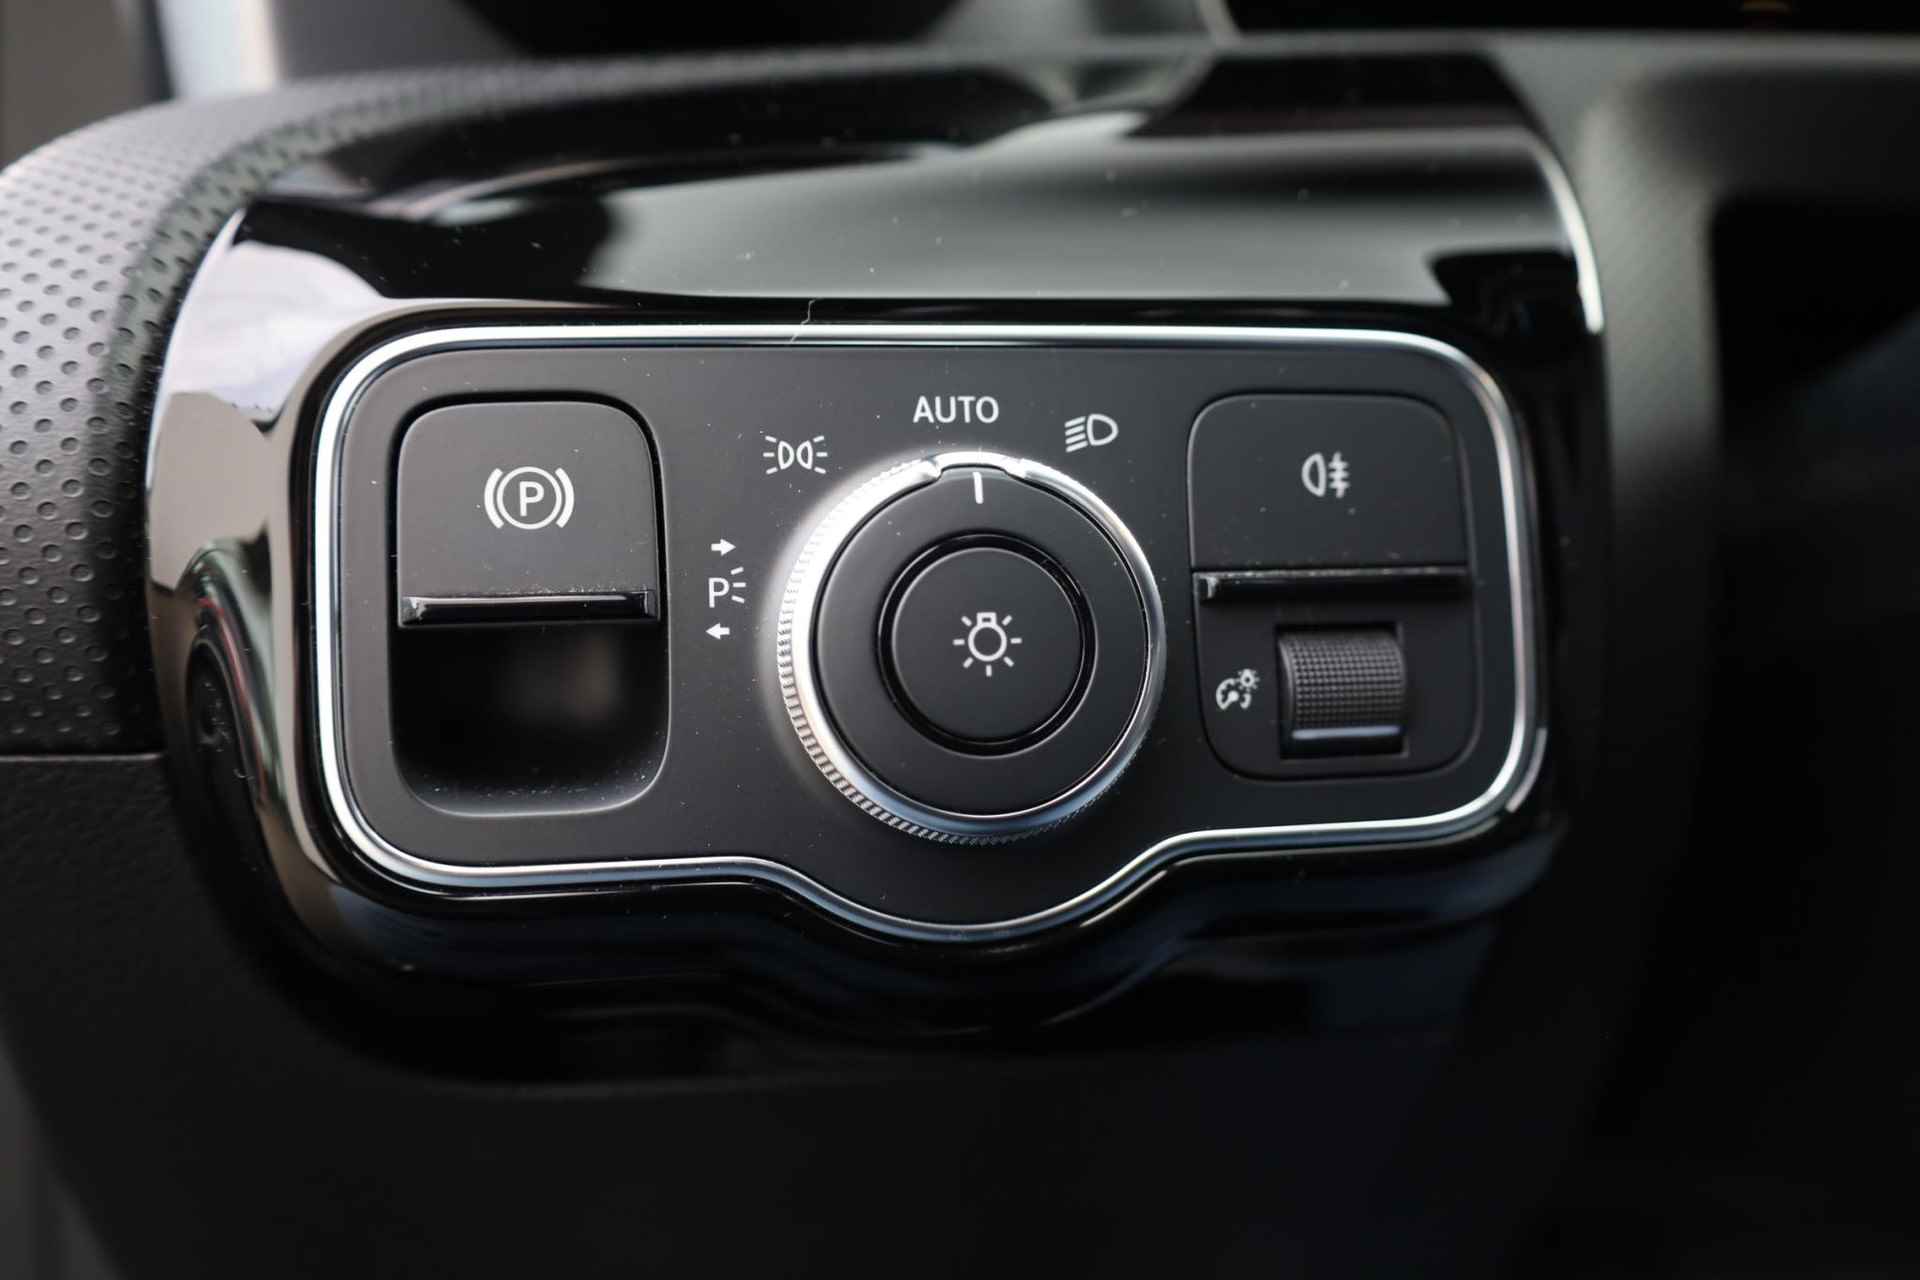 Mercedes-Benz A-klasse 200 Business Solution AMG 120KW/163PK automaat, Leder / alcantara, winterset LMV digitaal dashboard, navigatie, LED verlichting voor en achter, 18" LMV, stoelverwarming, parkeersensoren voor en achter, AMG bumpers - 14/44